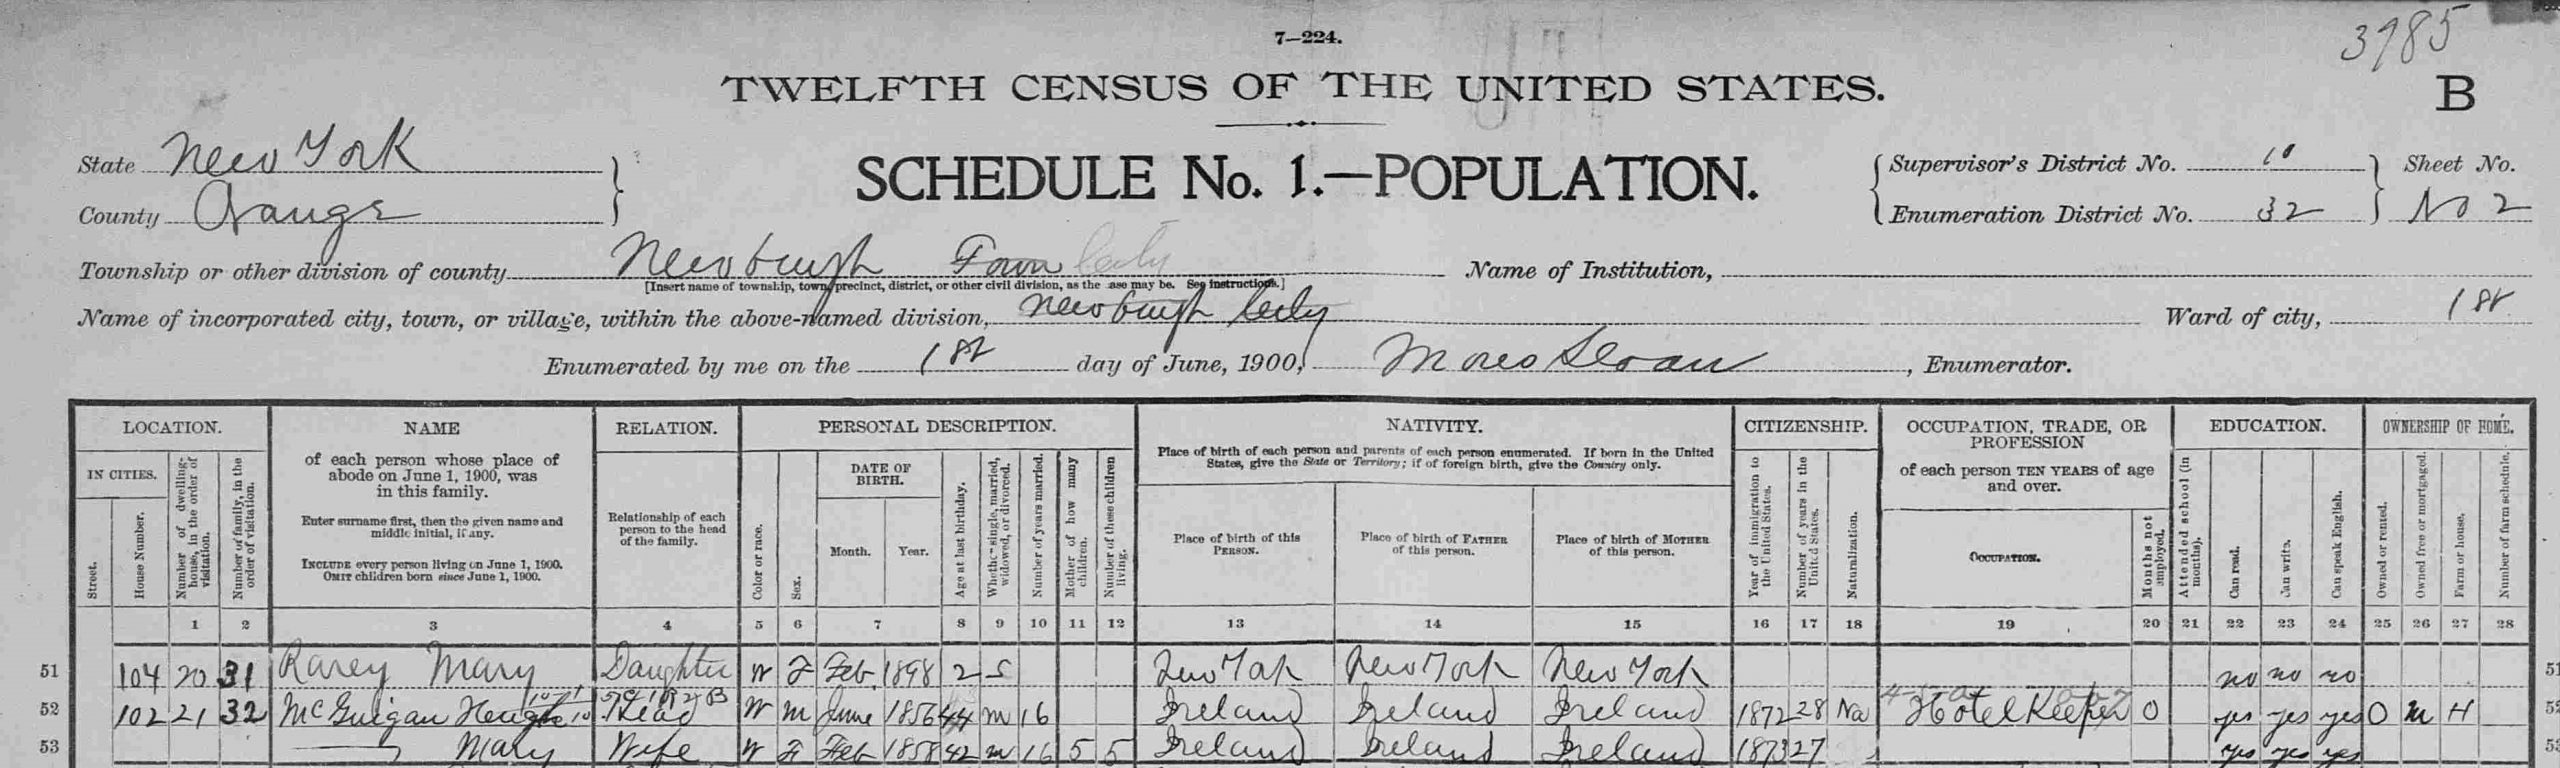 Census population schedule